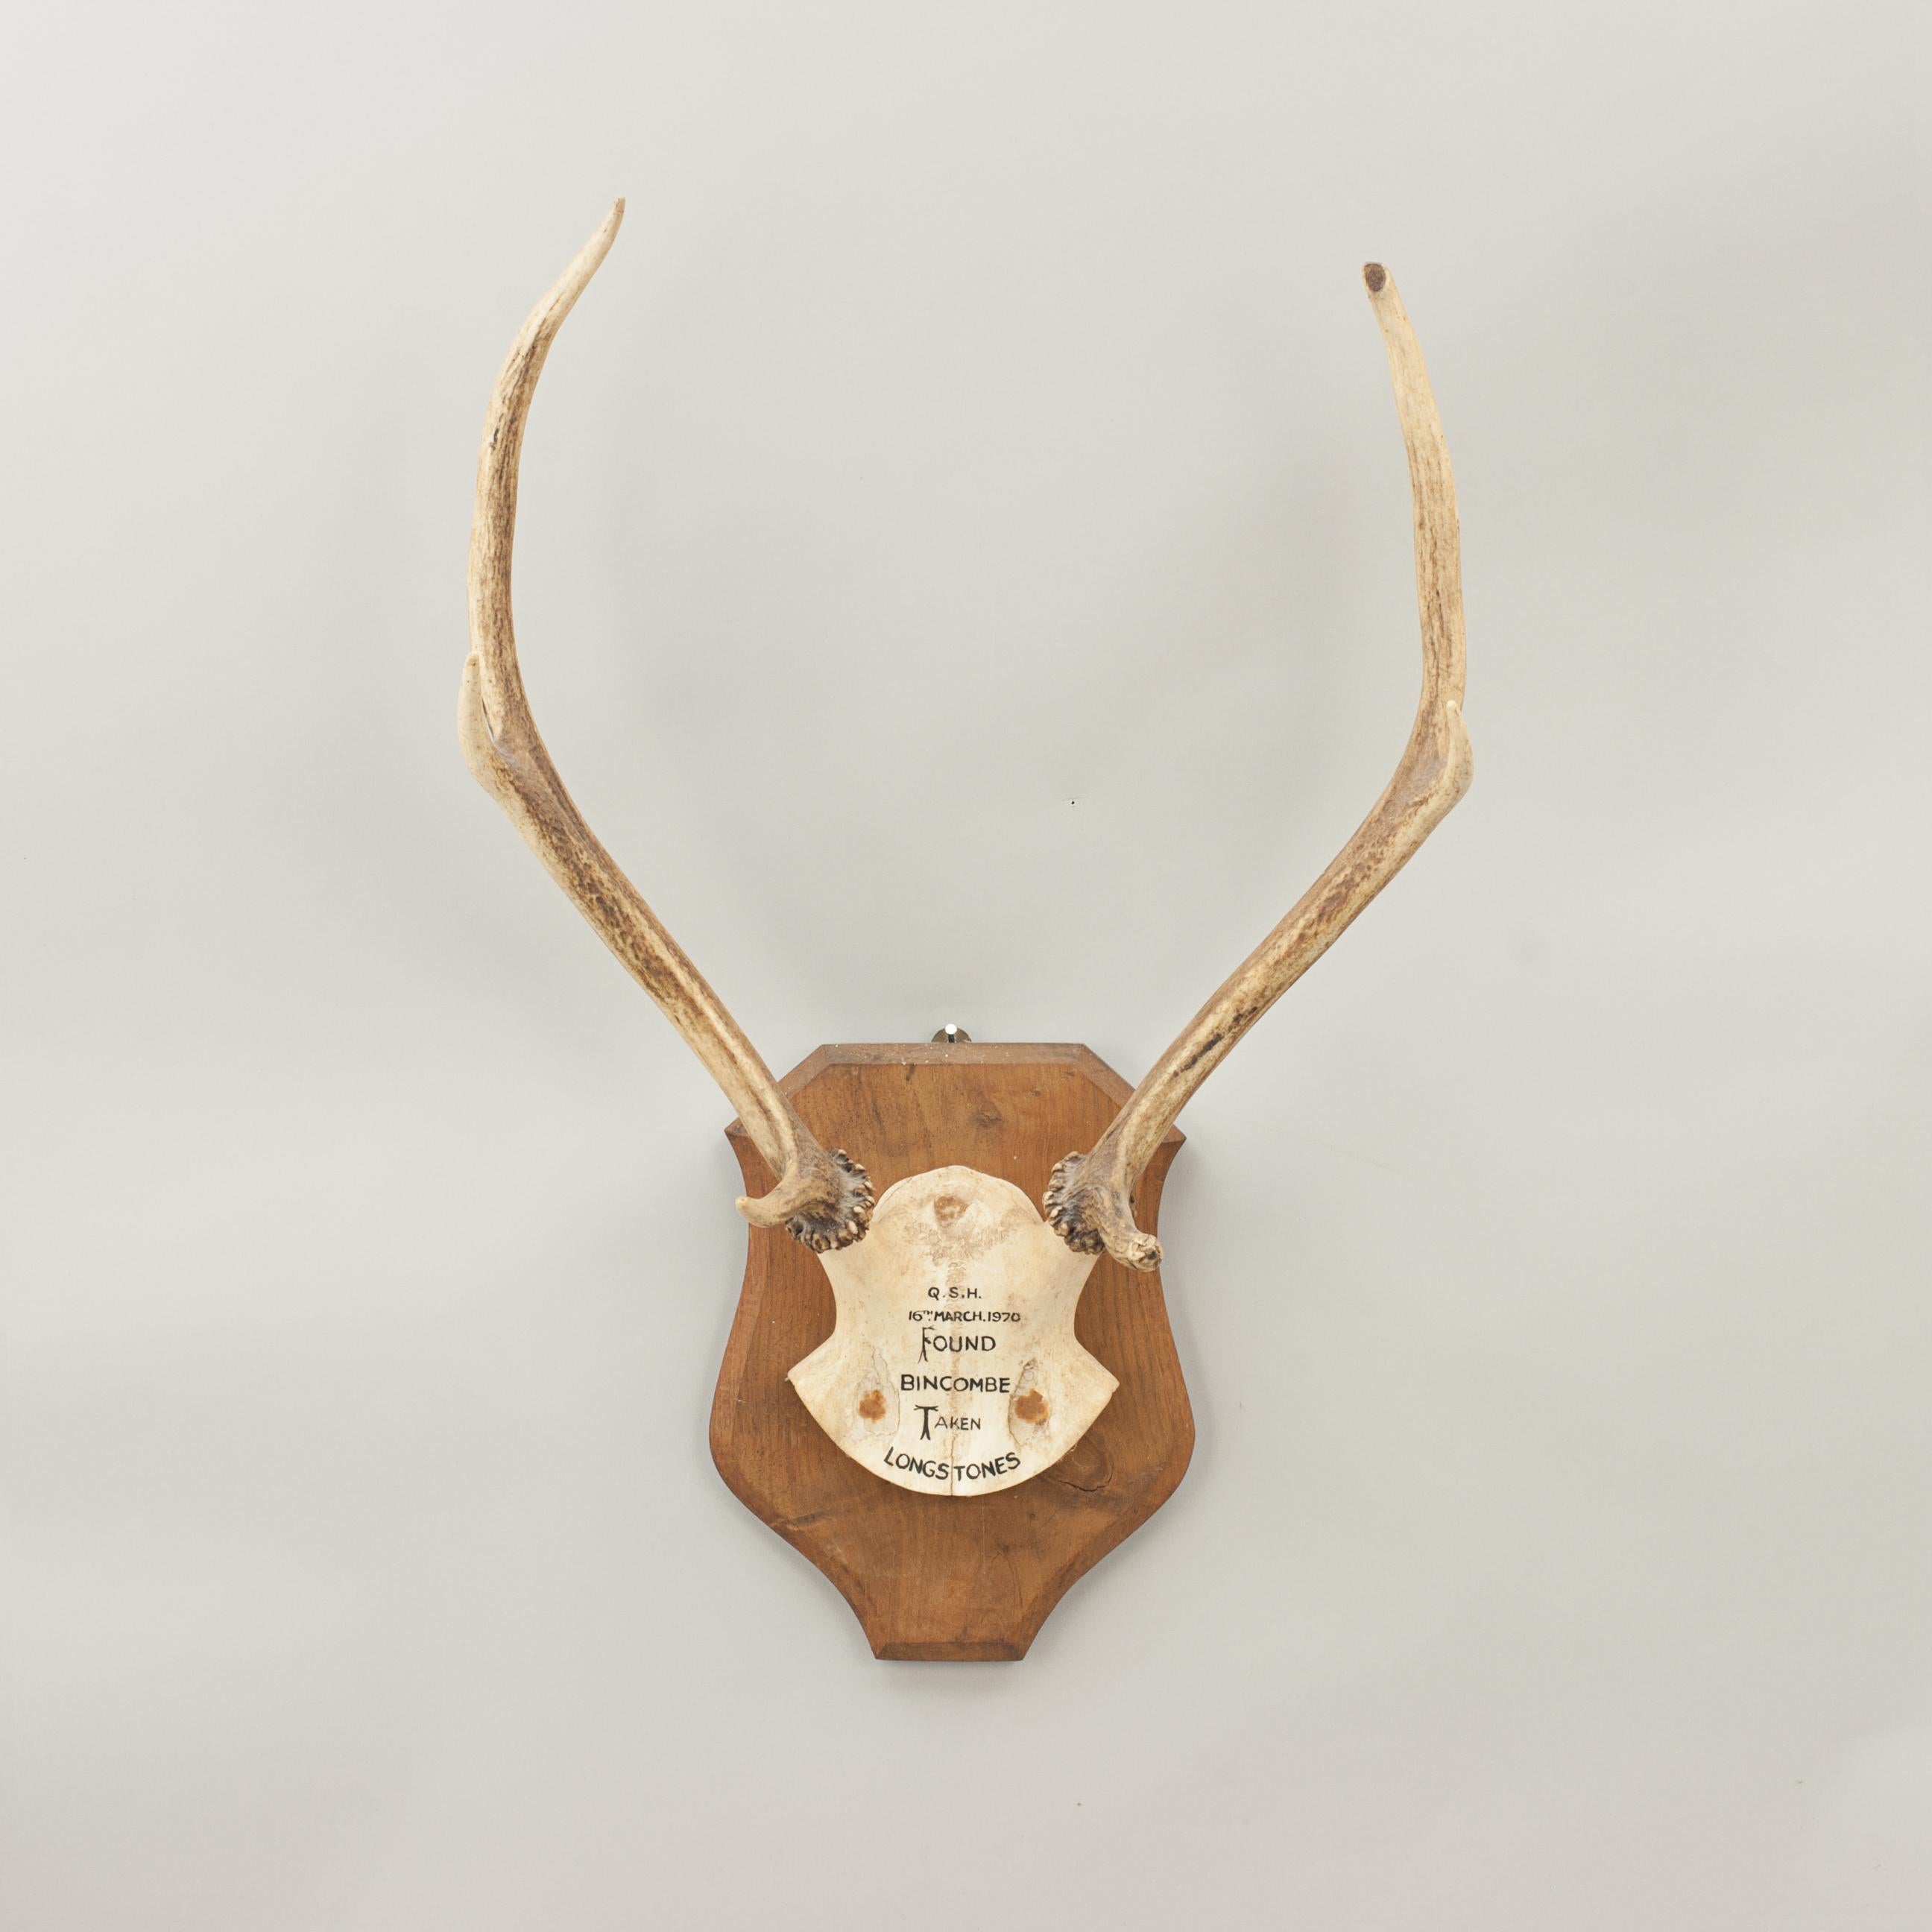 Pair of Red Deer Antlers, Skull Mount, Scotland, Bincombe, Longstones, 1970 3